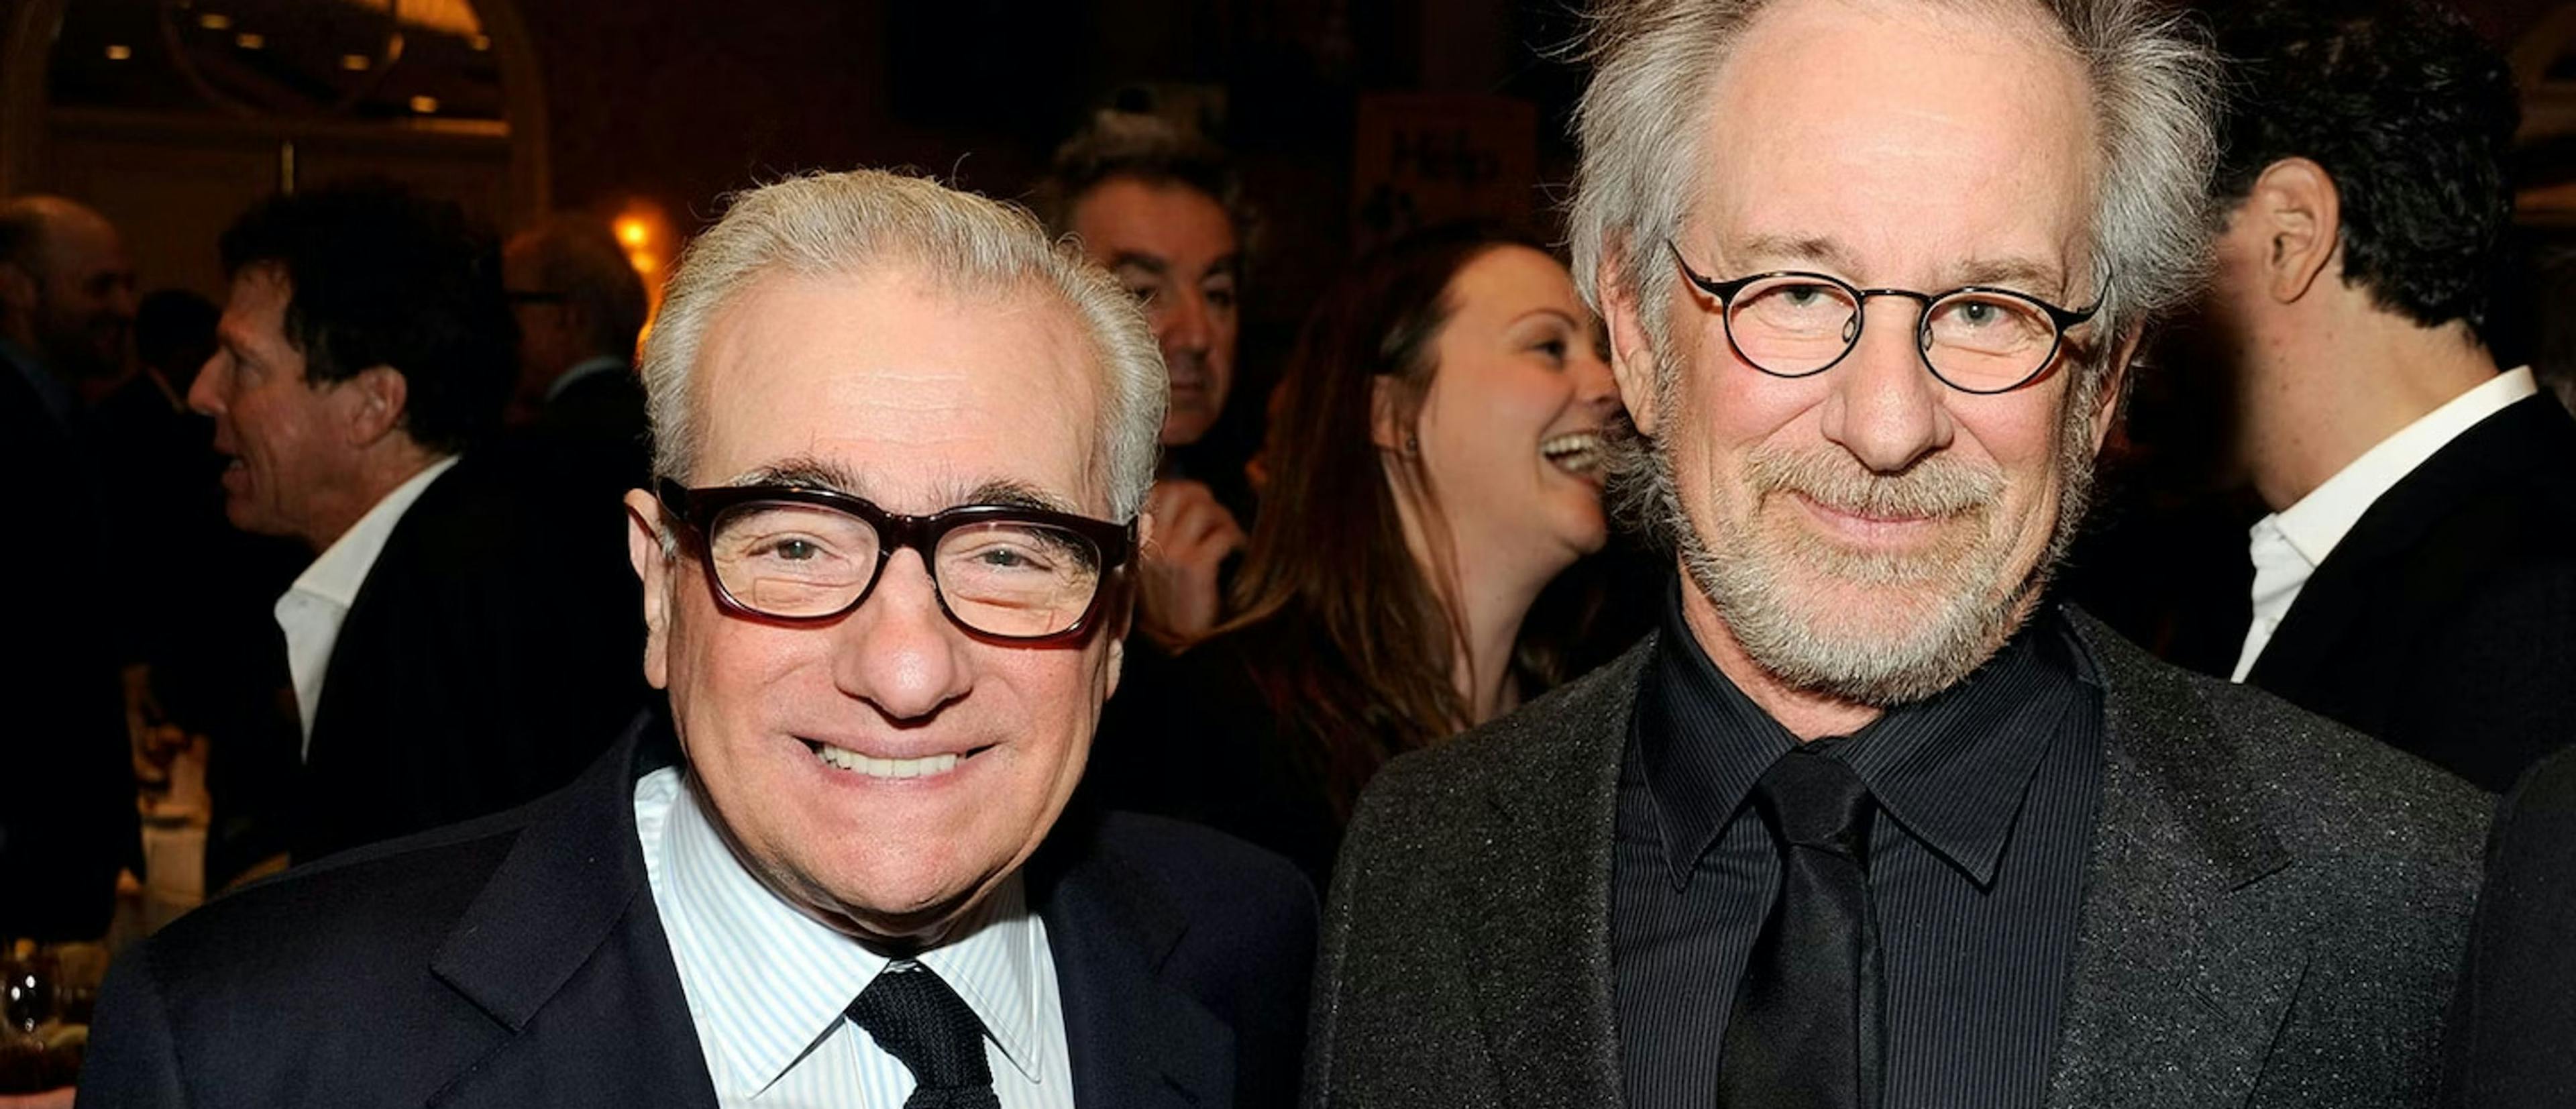 Martin Scorsese y Steven Spielberg posan juntos en una fiesta